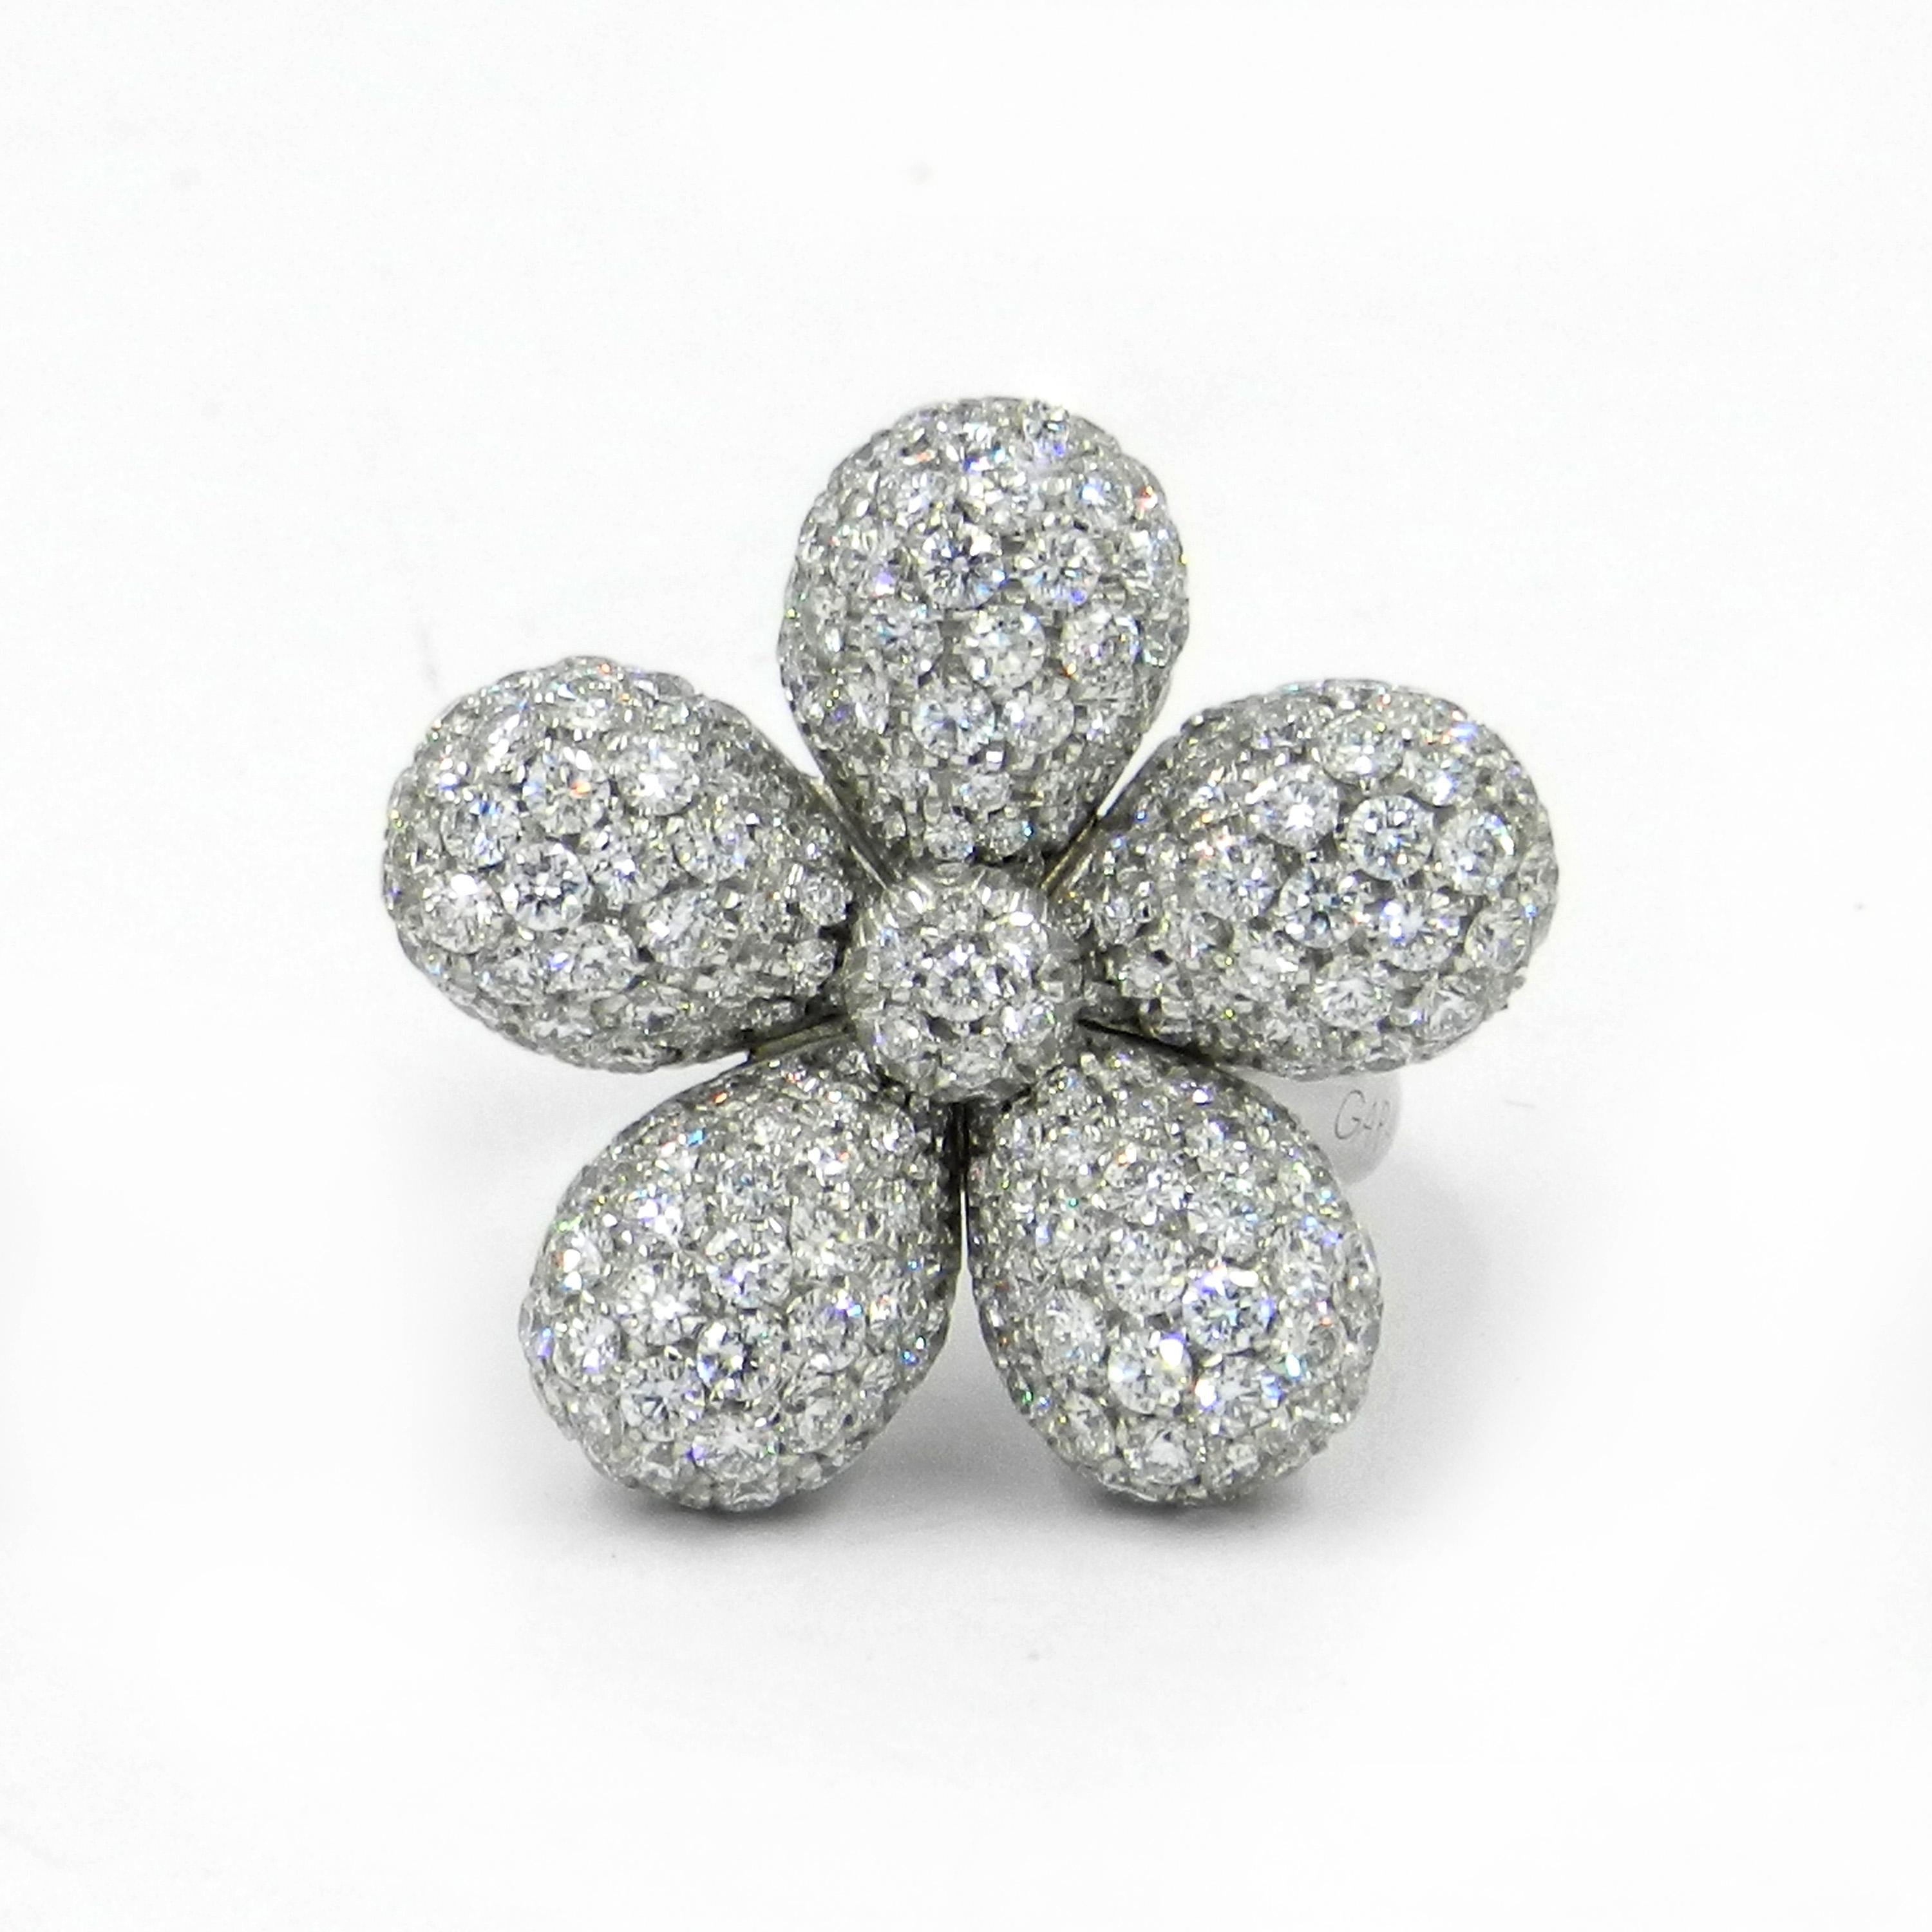 18 Karat White Gold White Diamonds Pavè Garavelli Flower Ring
Finger size 54 
Made In Italy
18 kt GOLD gr : 15,00
WHITE DIAMONDS ct : 4,56